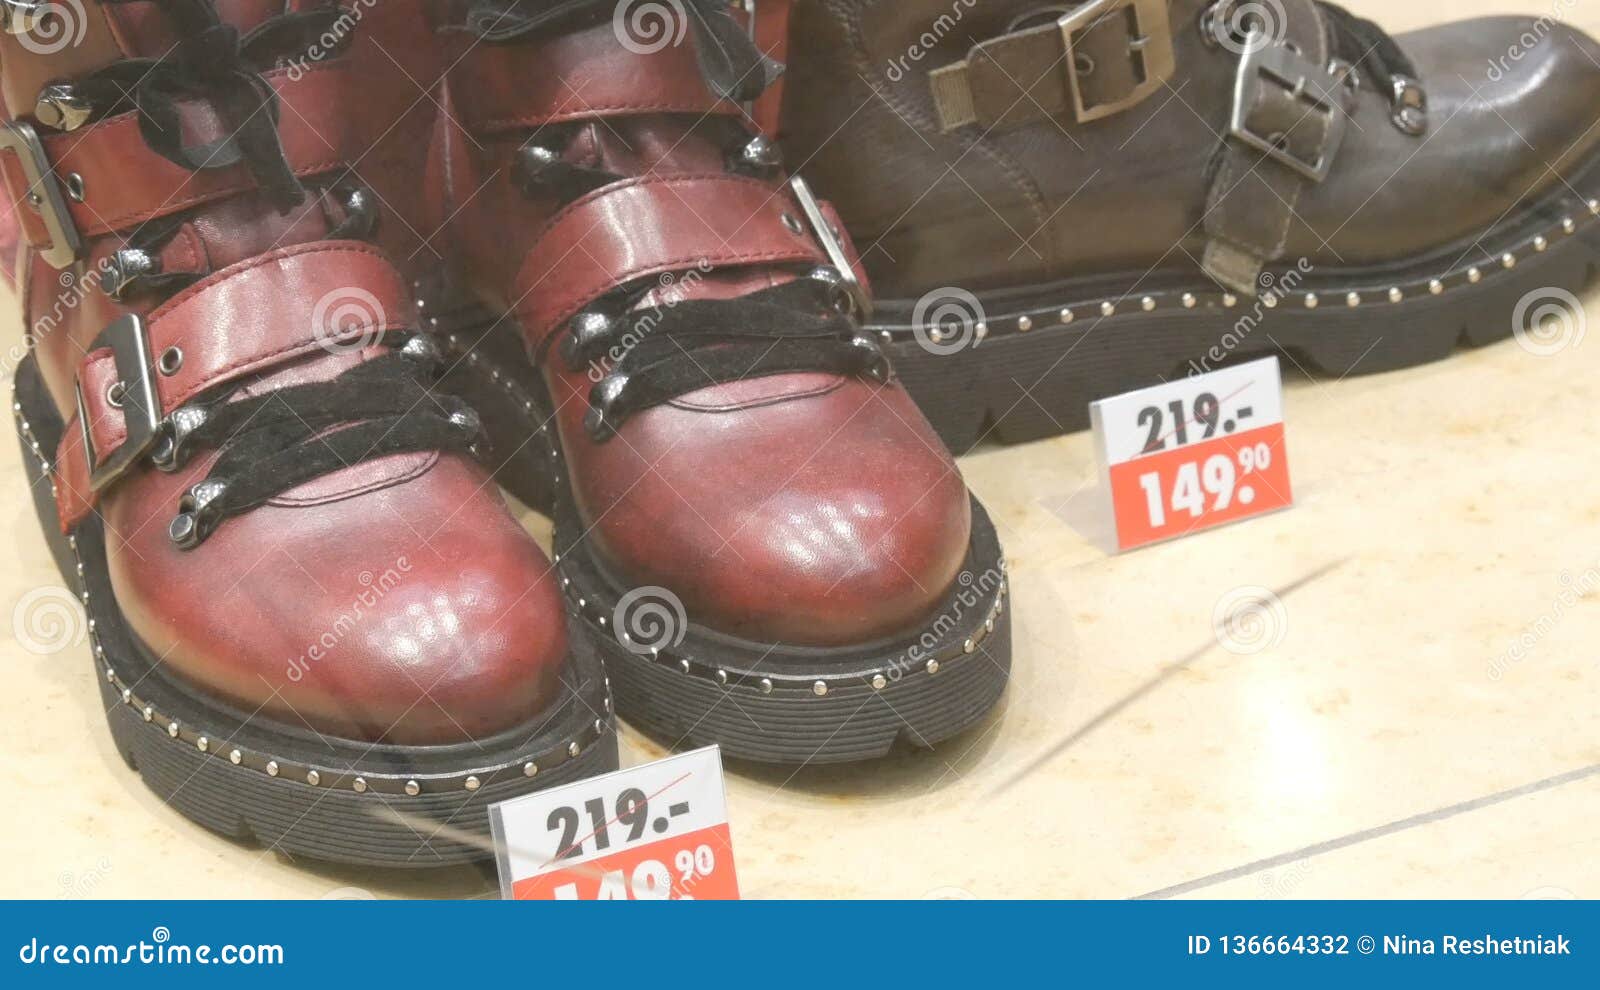 ronson shoe sale 2018